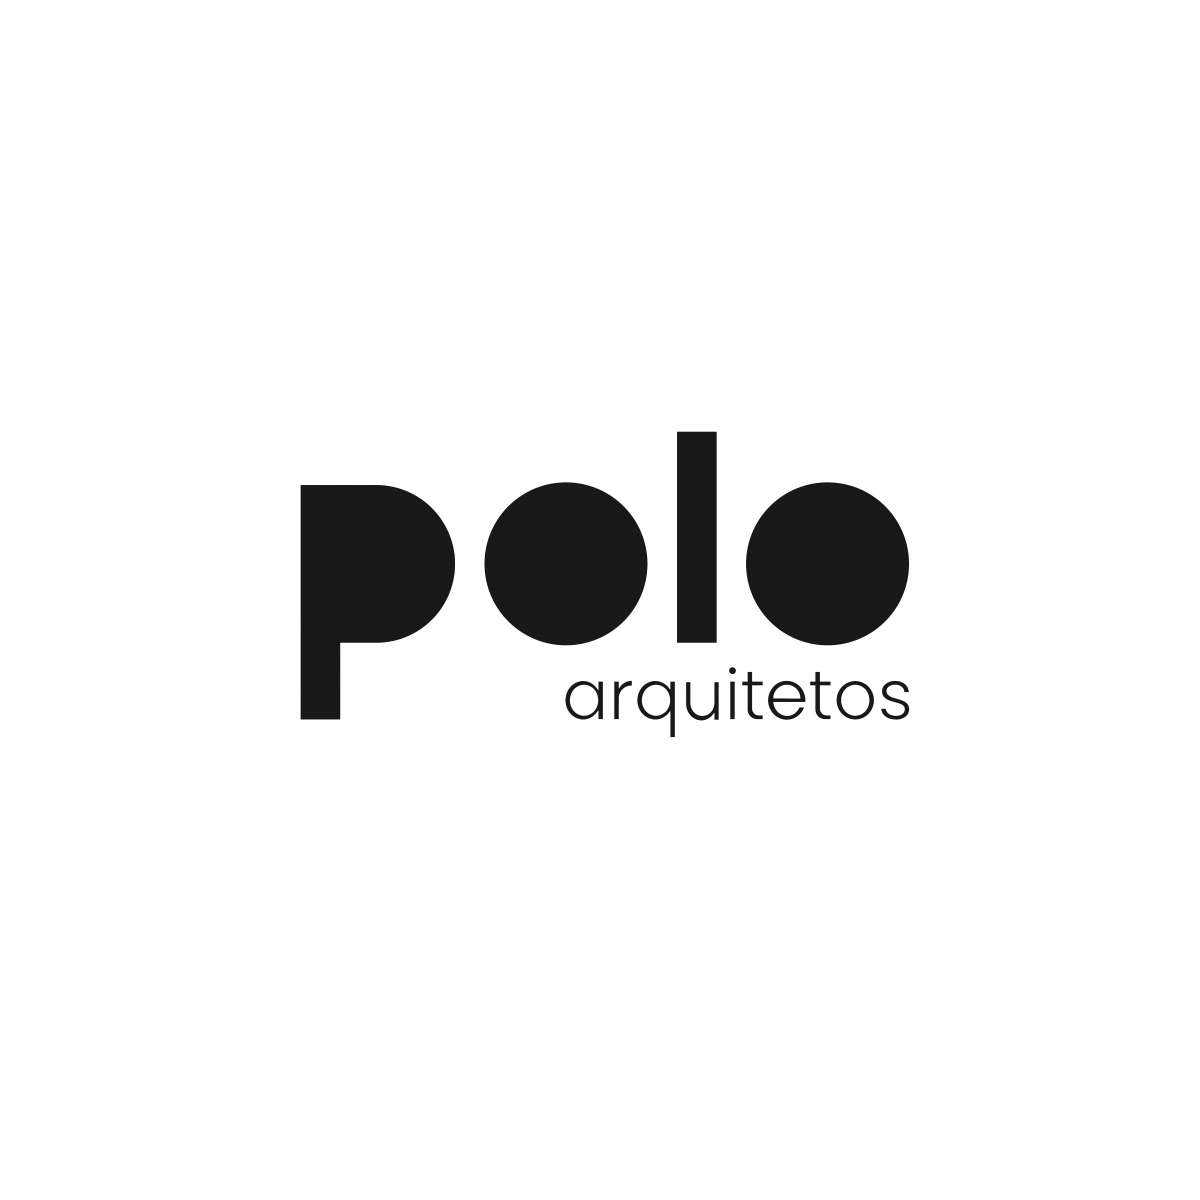 POLO Arquitetos - Portalegre - Autocad e Modelação 3D